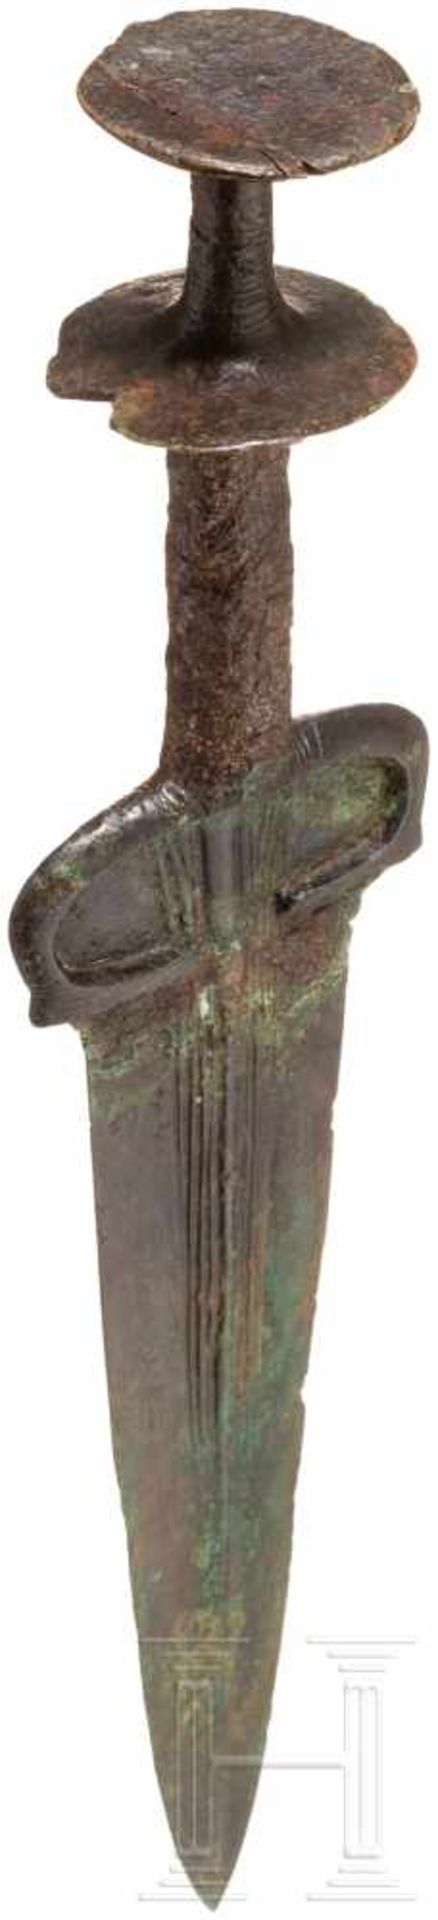 Bronzedolch mit Scheibenknauf, Nordiran - Luristan, um 1000 v. Chr.Klinge und Griff separat - Bild 4 aus 4